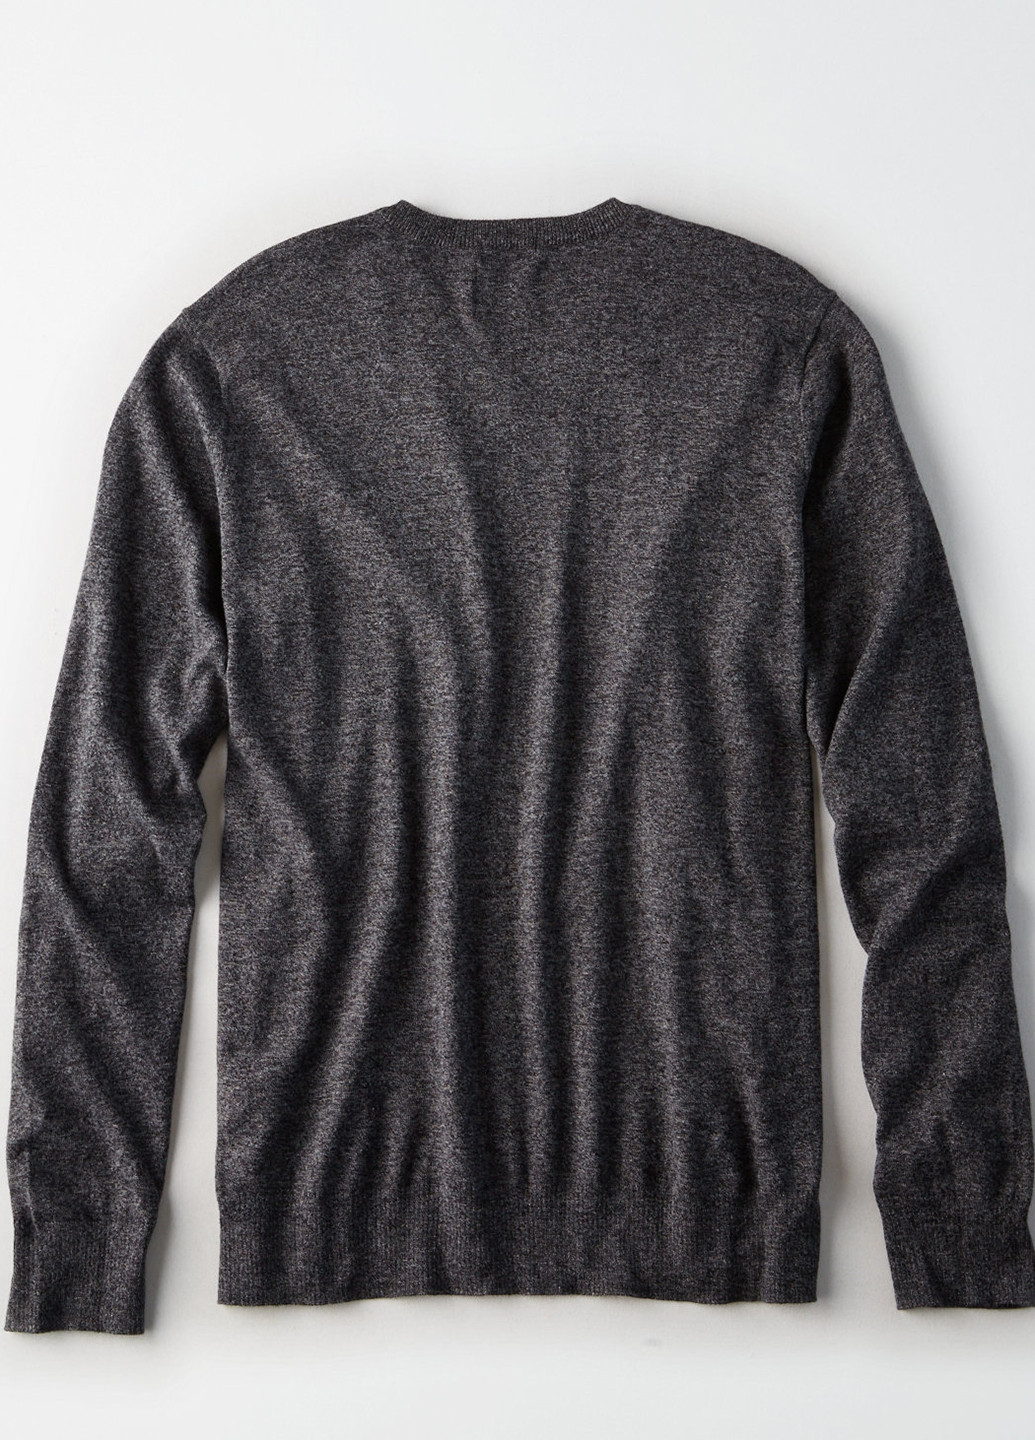 Темно-серый зимний пуловер пуловер American Eagle